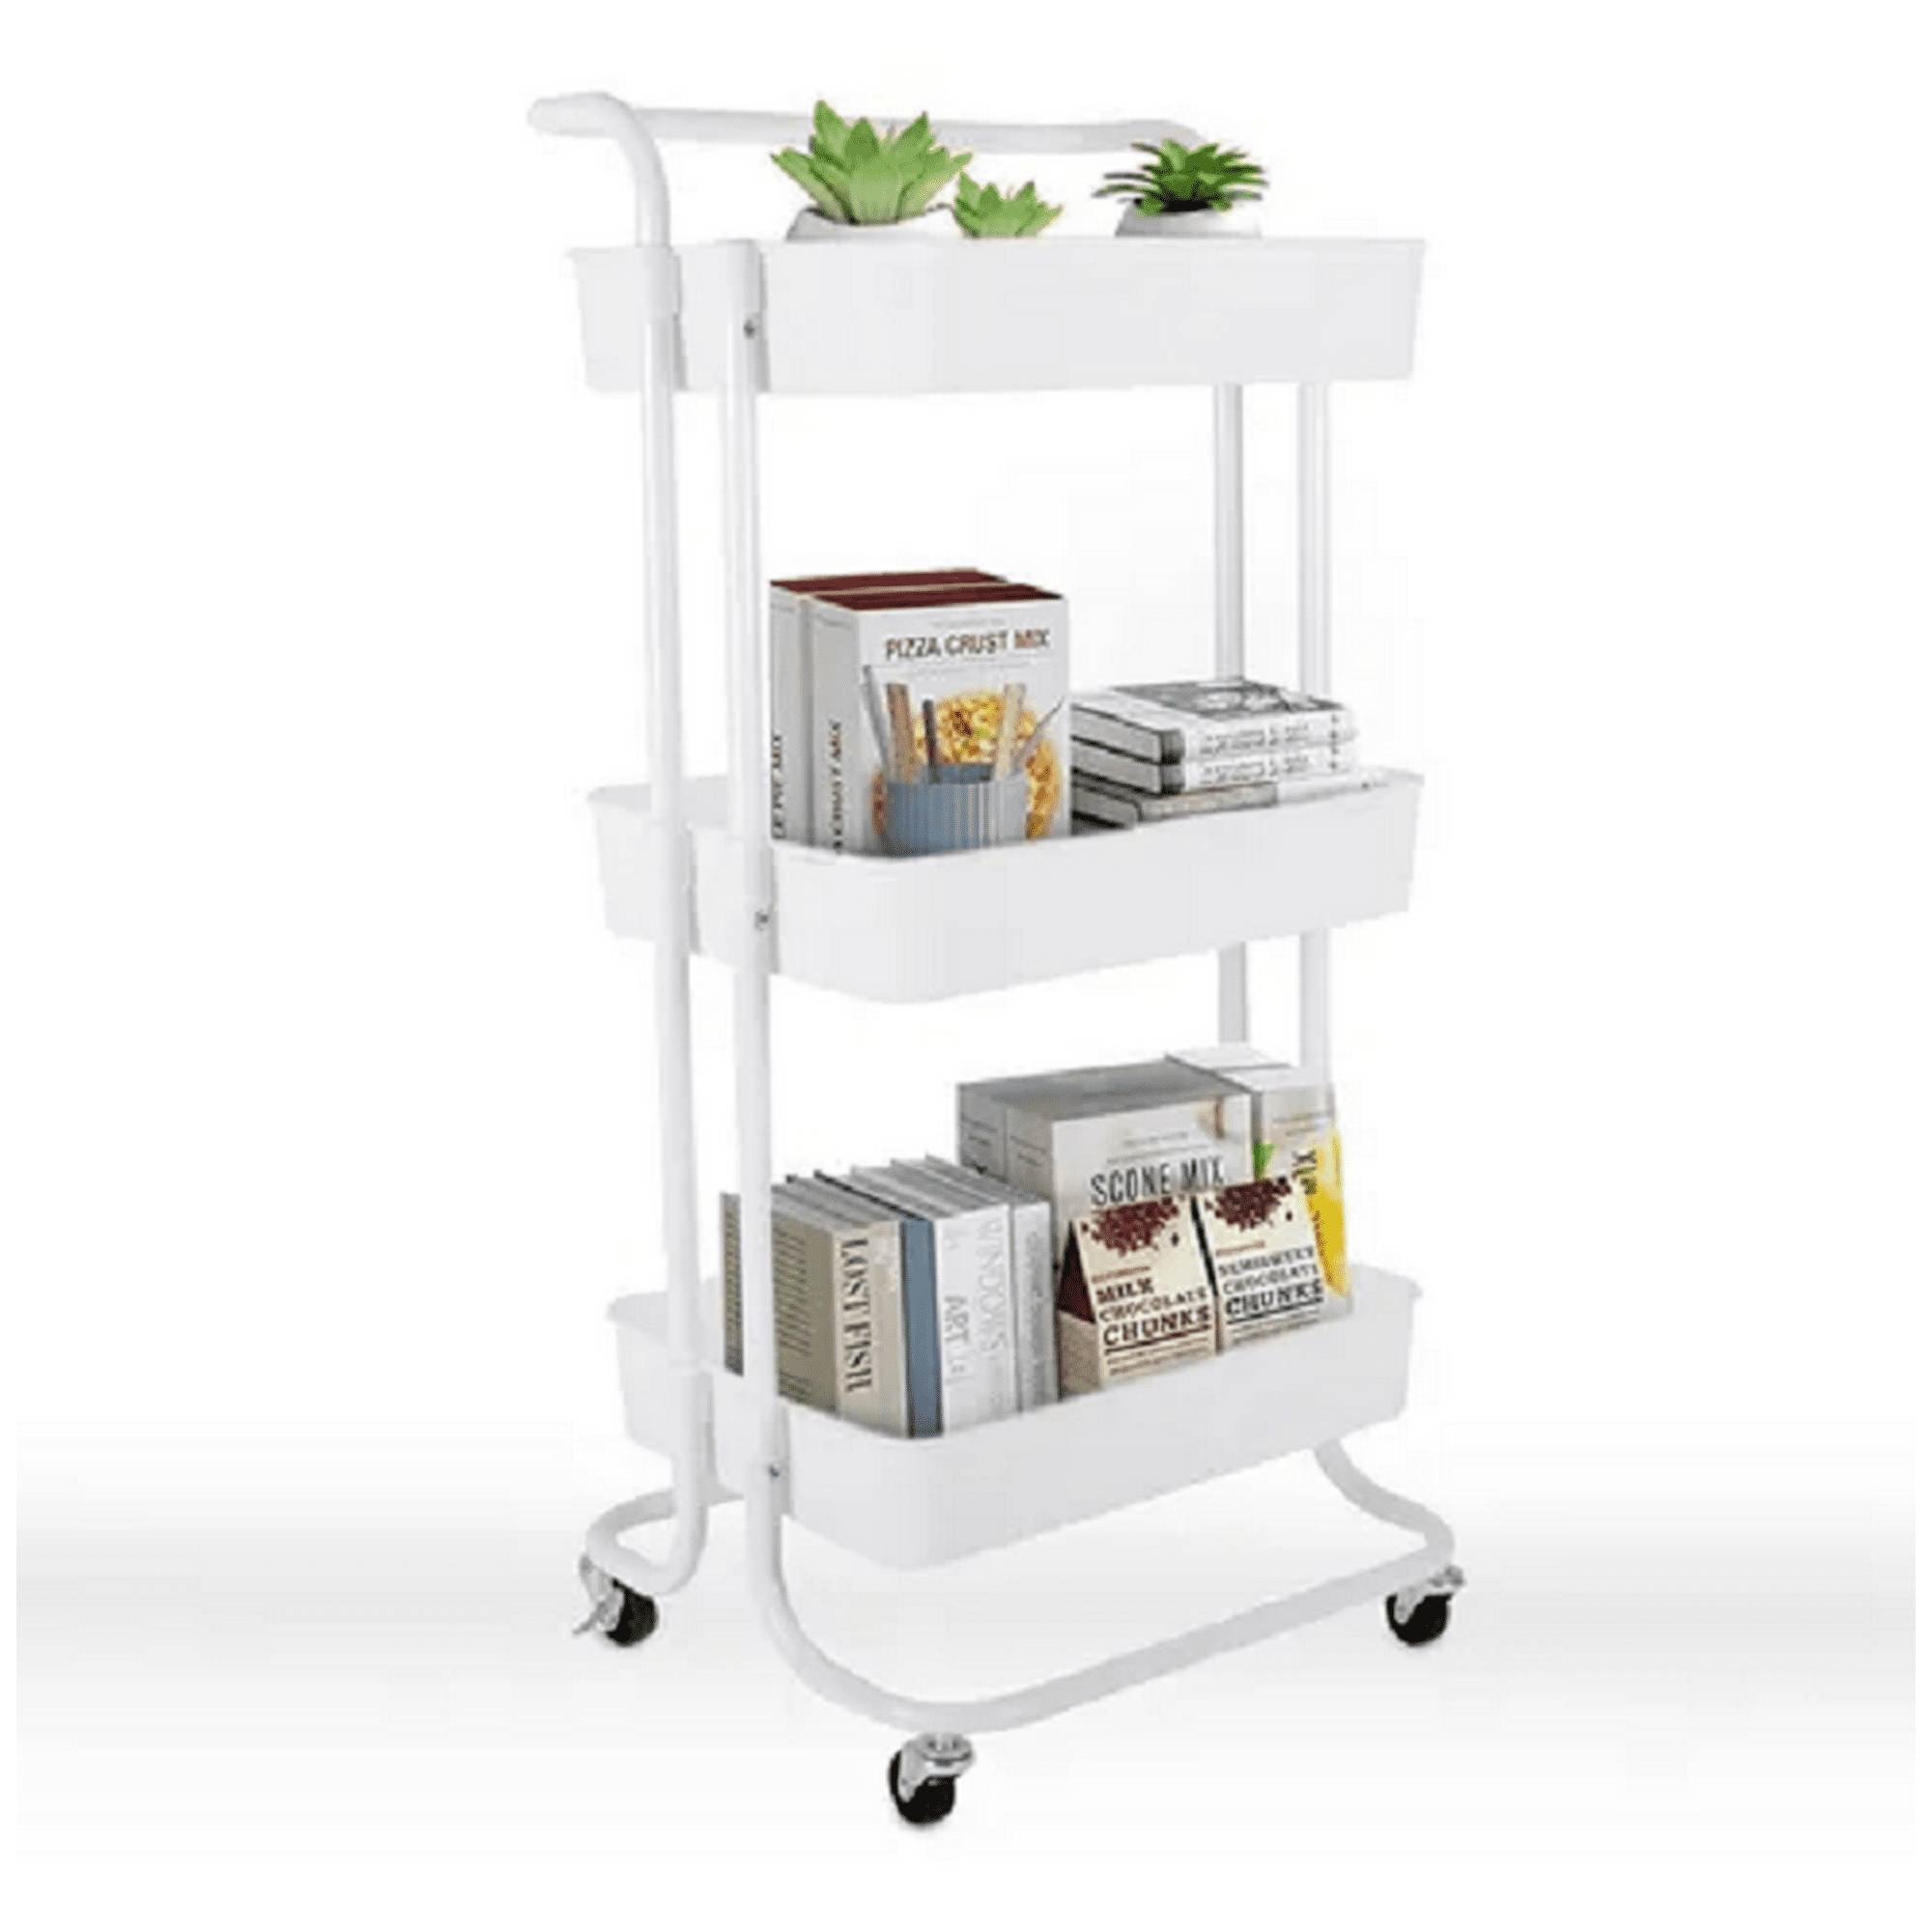 Carrito de metal de 3 niveles con ruedas, carrito de almacenamiento con  ruedas resistente para la cocina para organizar libros, aperitivos